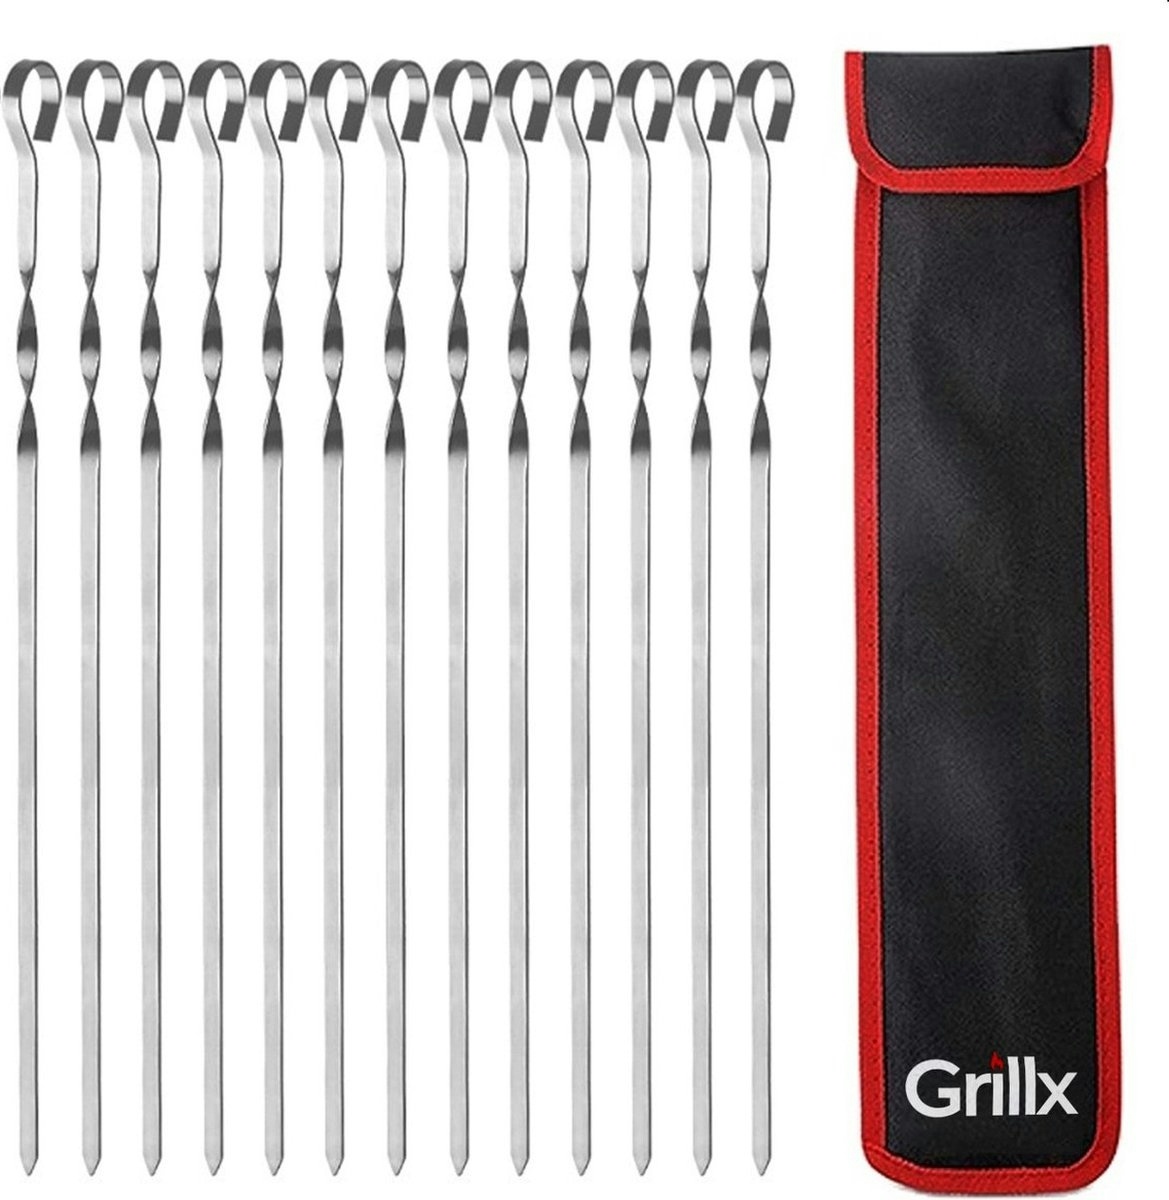 GrillX Grillspieß-Set bestehend aus 12 Spießen in luxuriöser Tasche.